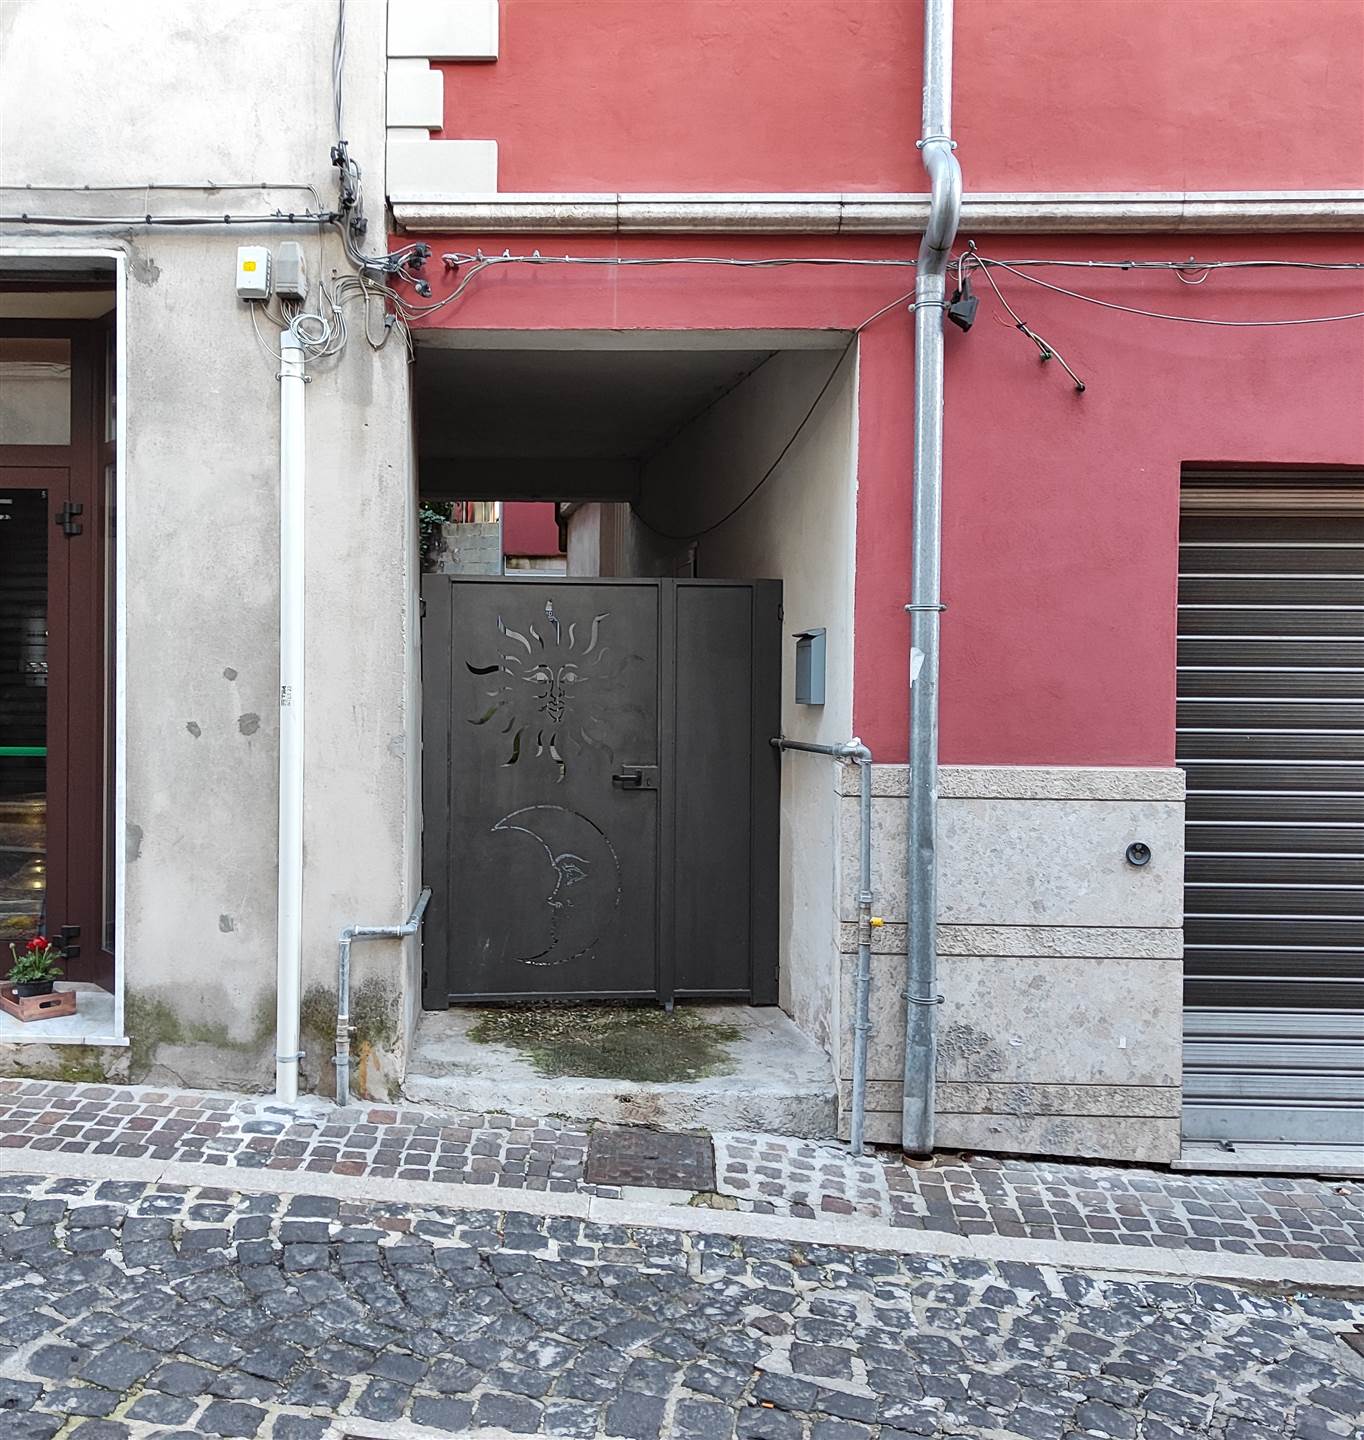 Appartamento in vendita a Montella Avellino